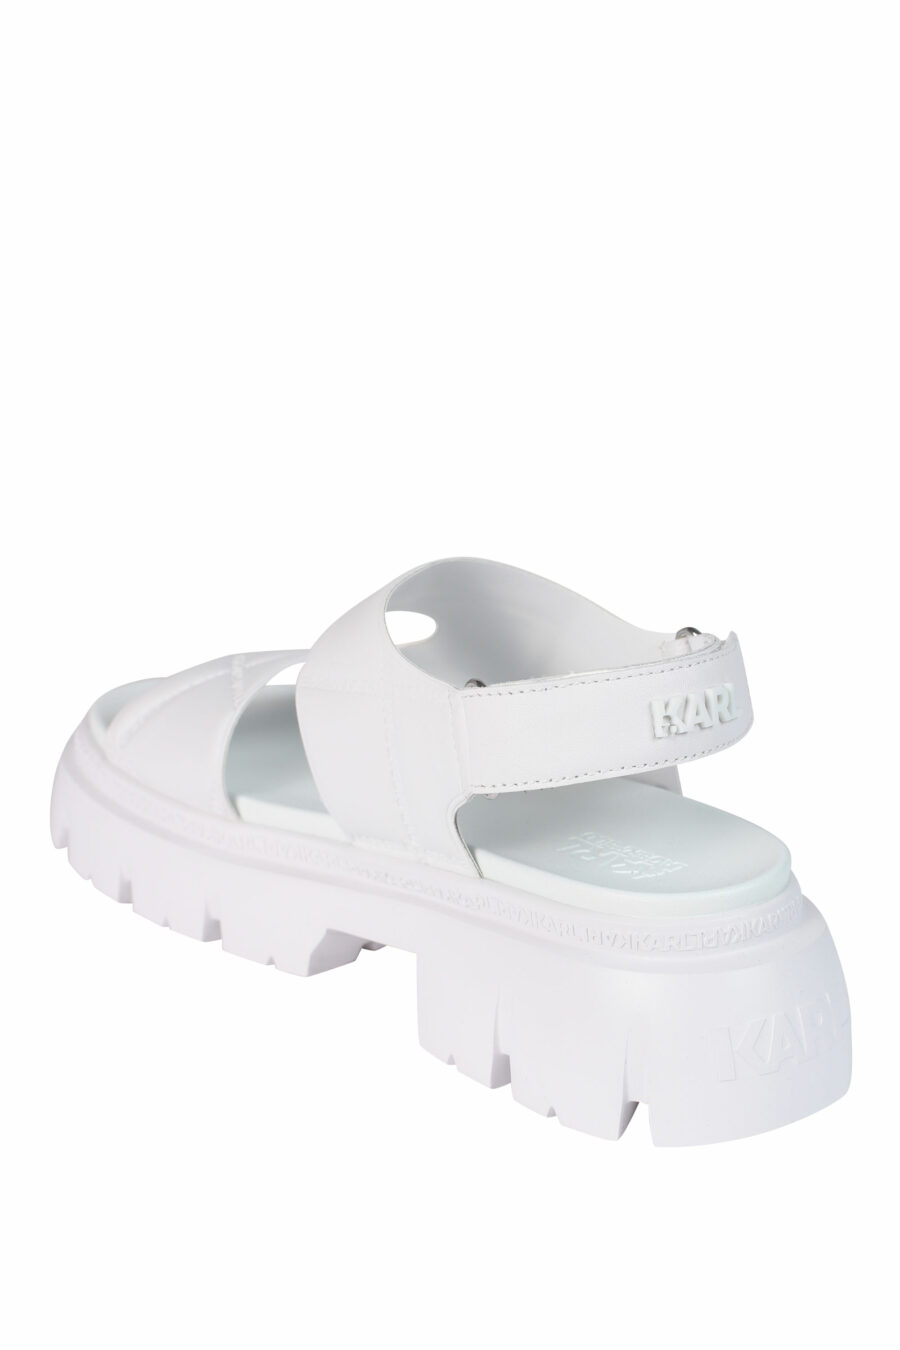 Sandalias blancas acolchadas cruzadas con plataforma y logo - 5059529245473 4